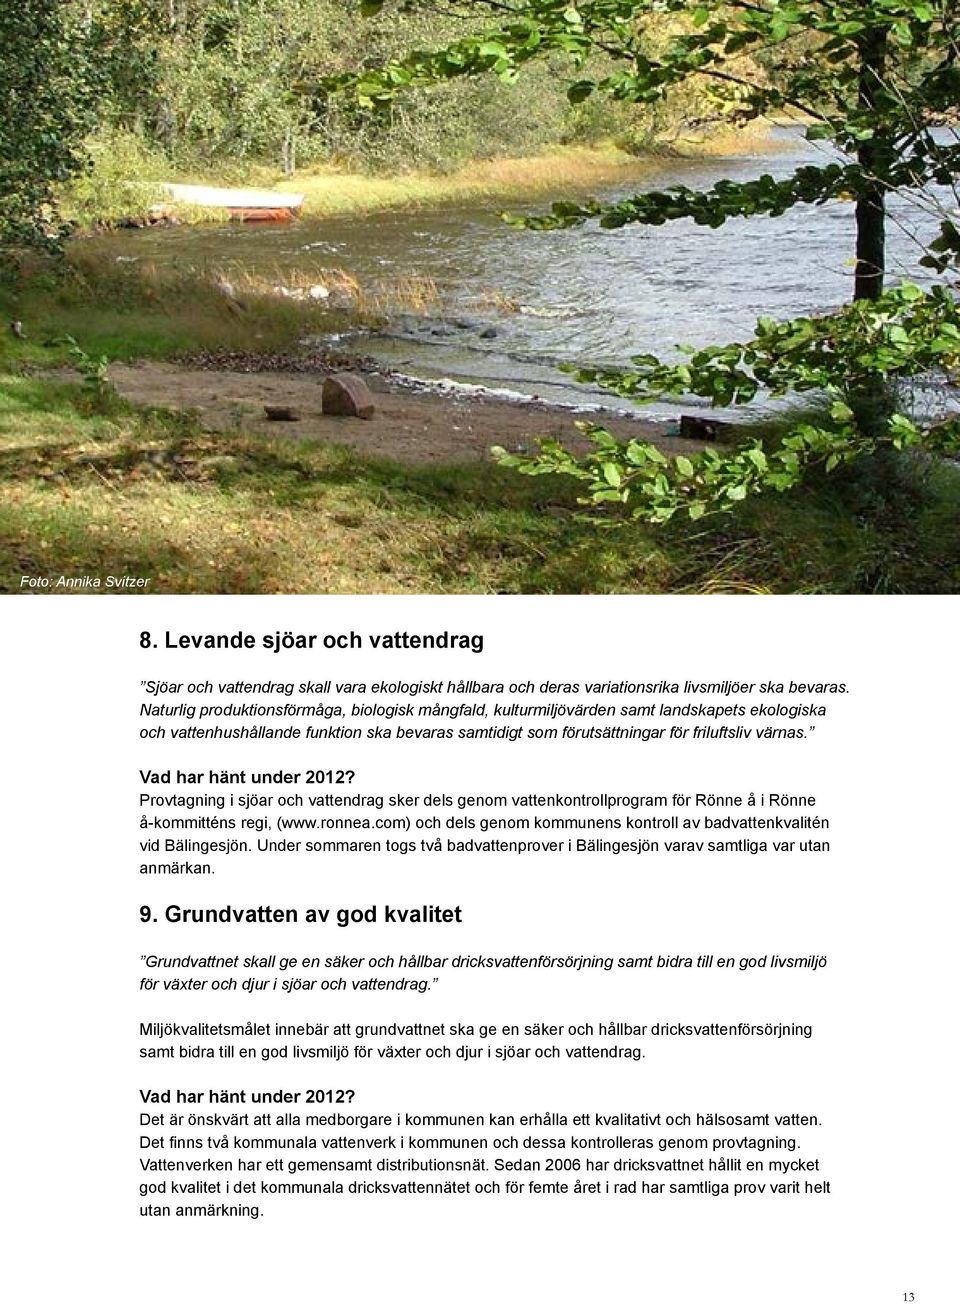 Vad har hänt under 212? Provtagning i sjöar och vattendrag sker dels genom vattenkontrollprogram för Rönne å i Rönne å-kommitténs regi, (www.ronnea.